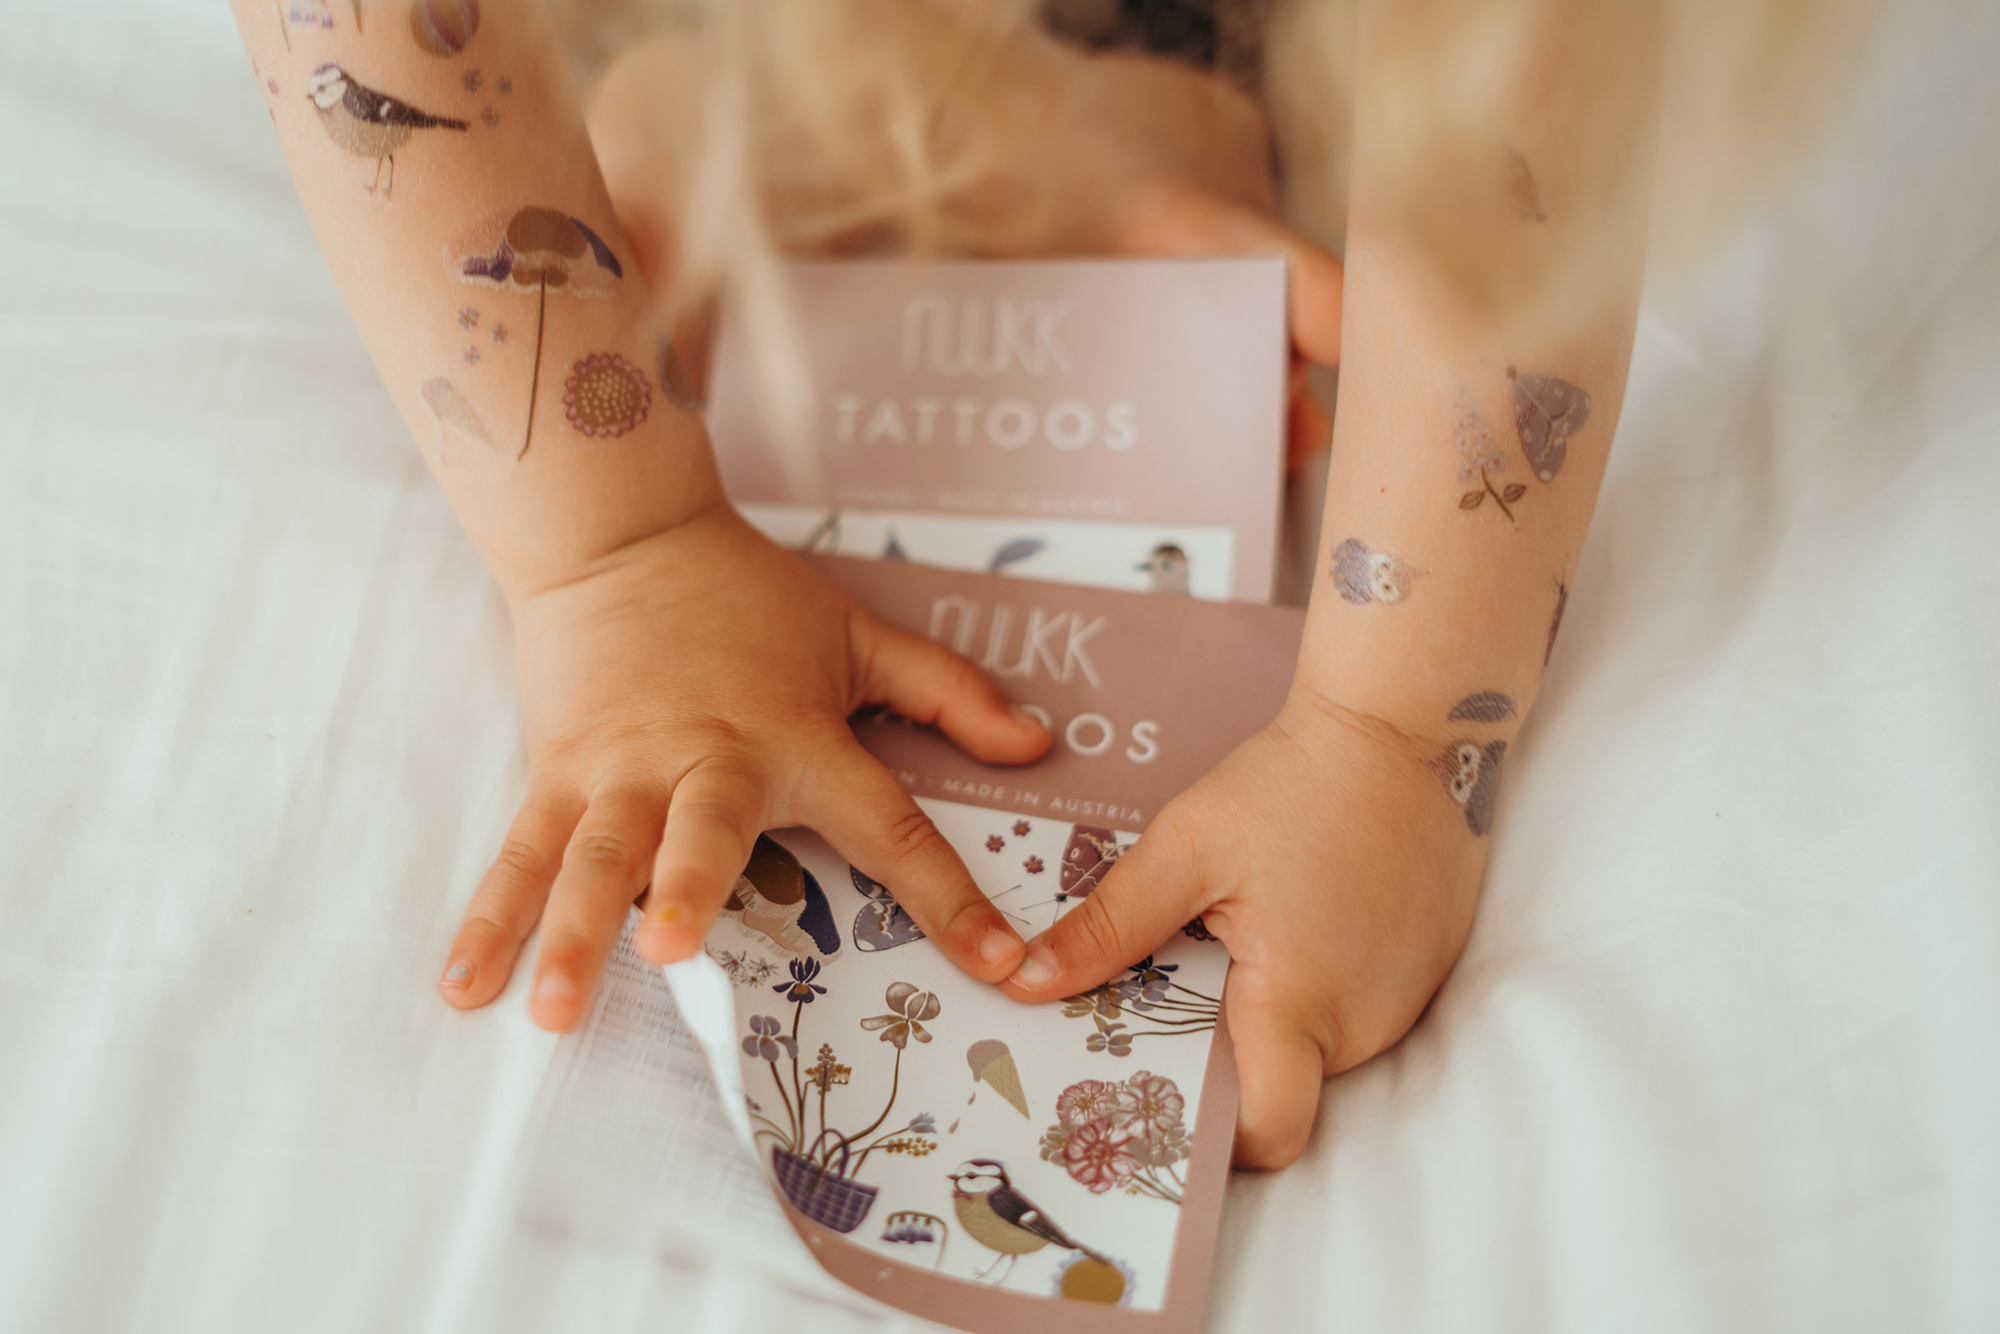 flowerbouquet-kindertattoos-verpackung-packaging-temporary-tattoos-kinderarme-kinderhaende-nuukk